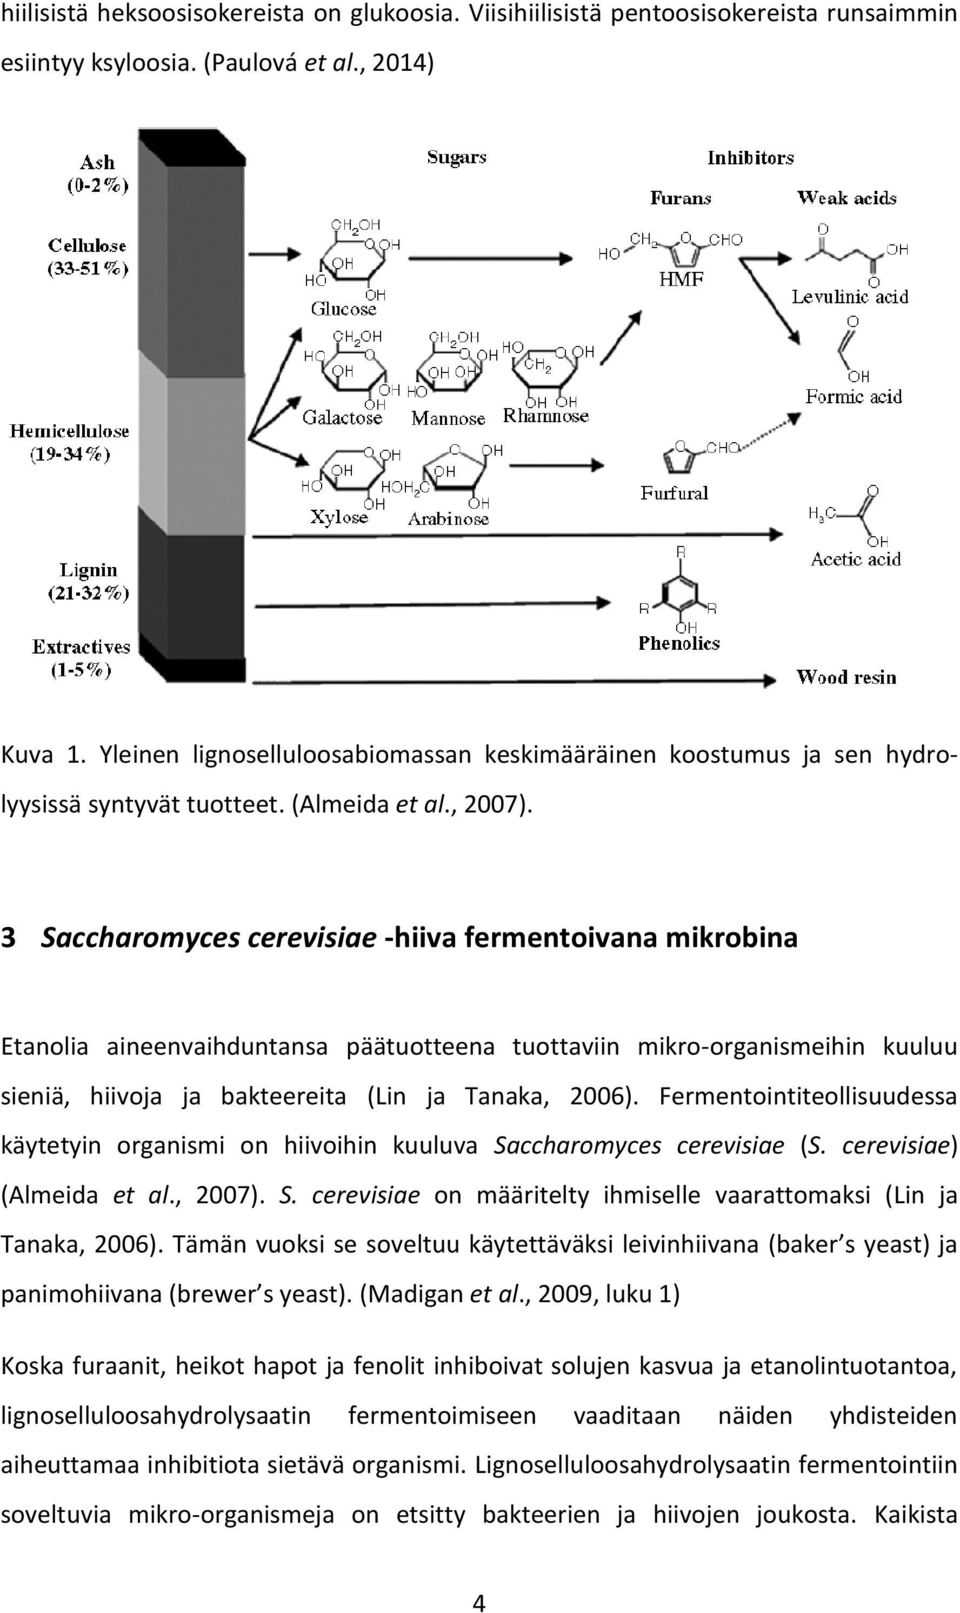 3 accharomyces cerevisiae -hiiva fermentoivana mikrobina Etanolia aineenvaihduntansa päätuotteena tuottaviin mikro-organismeihin kuuluu sieniä, hiivoja ja bakteereita (Lin ja Tanaka, 2006).